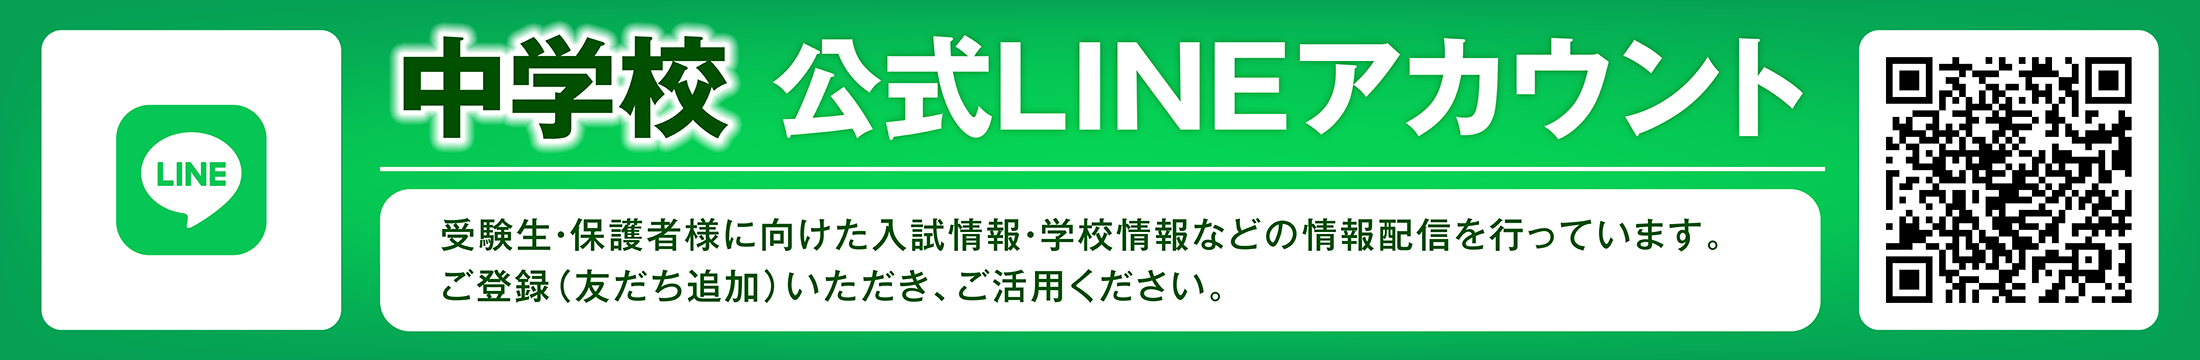 中学校公式LINE